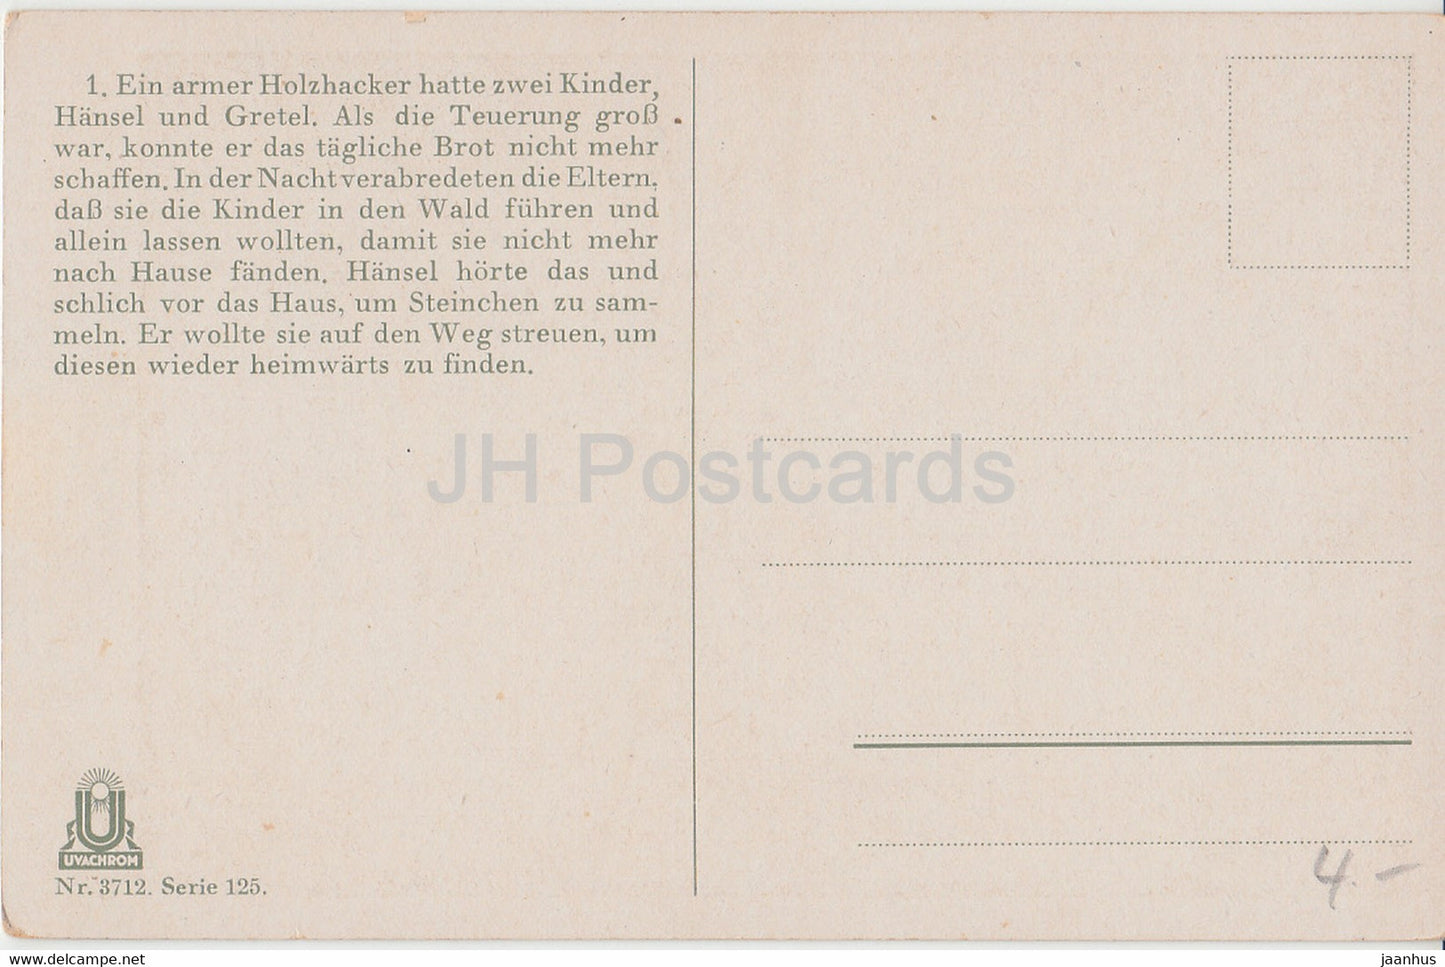 Bruder Grimm - Hänsel und Gretel - Illustration von Otto Kubel - Junge - Katze - Uvachrom 3712 - alte Postkarte - unbenutzt